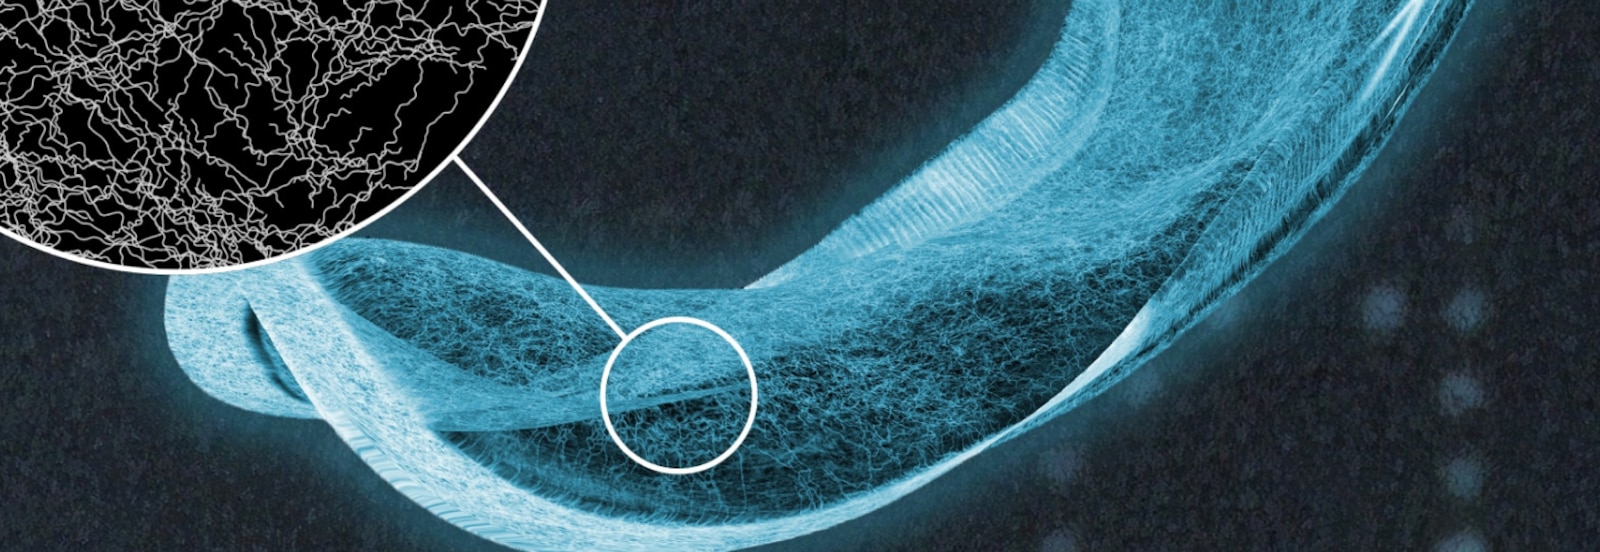 Röntgenový snímok absorpčnej vložky TENA s detailným záberom na vlákna v absorpčnom jadre. 